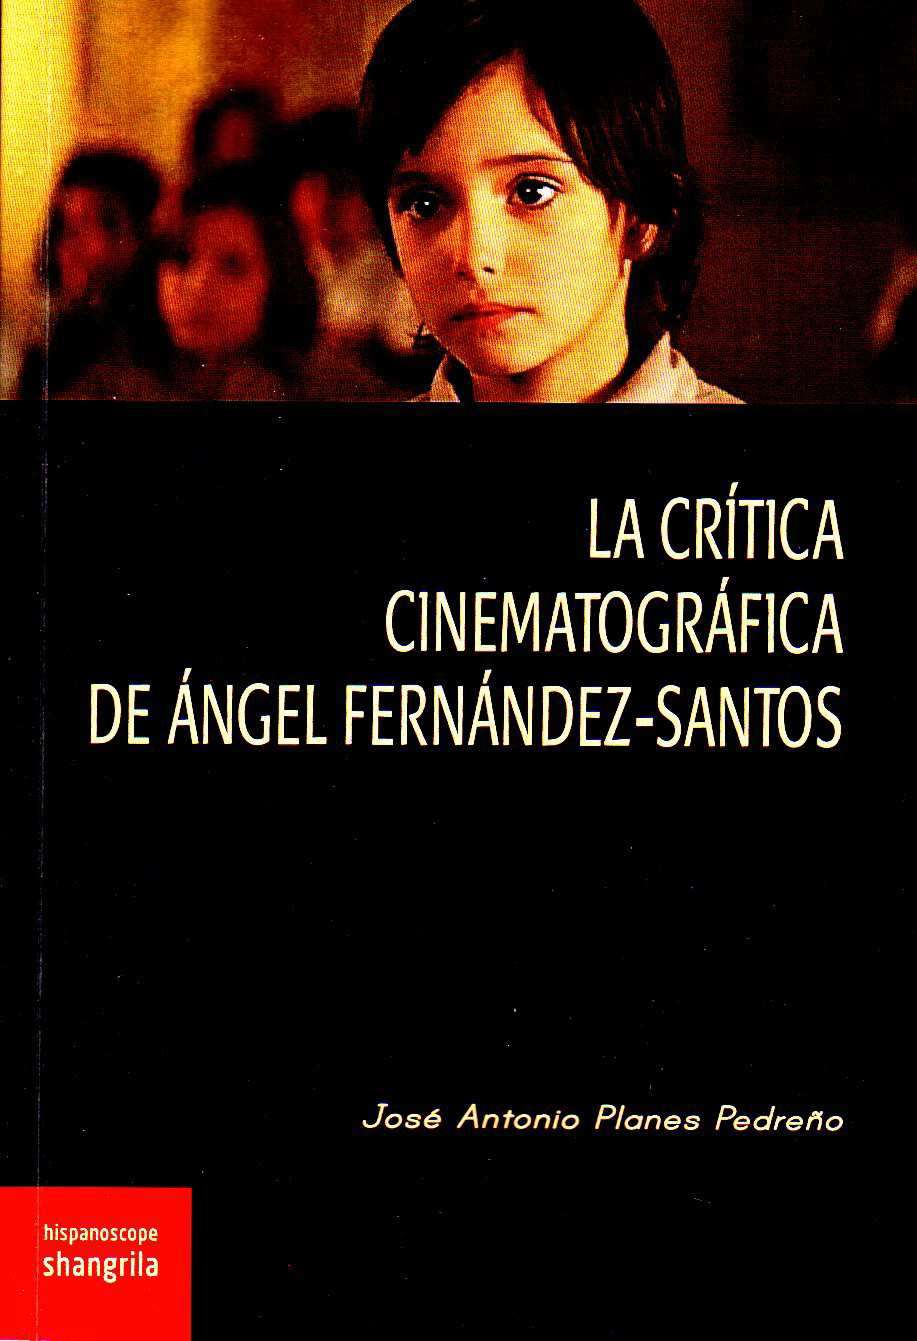 La crítica cinematográfica de Ángel fernández-Santos